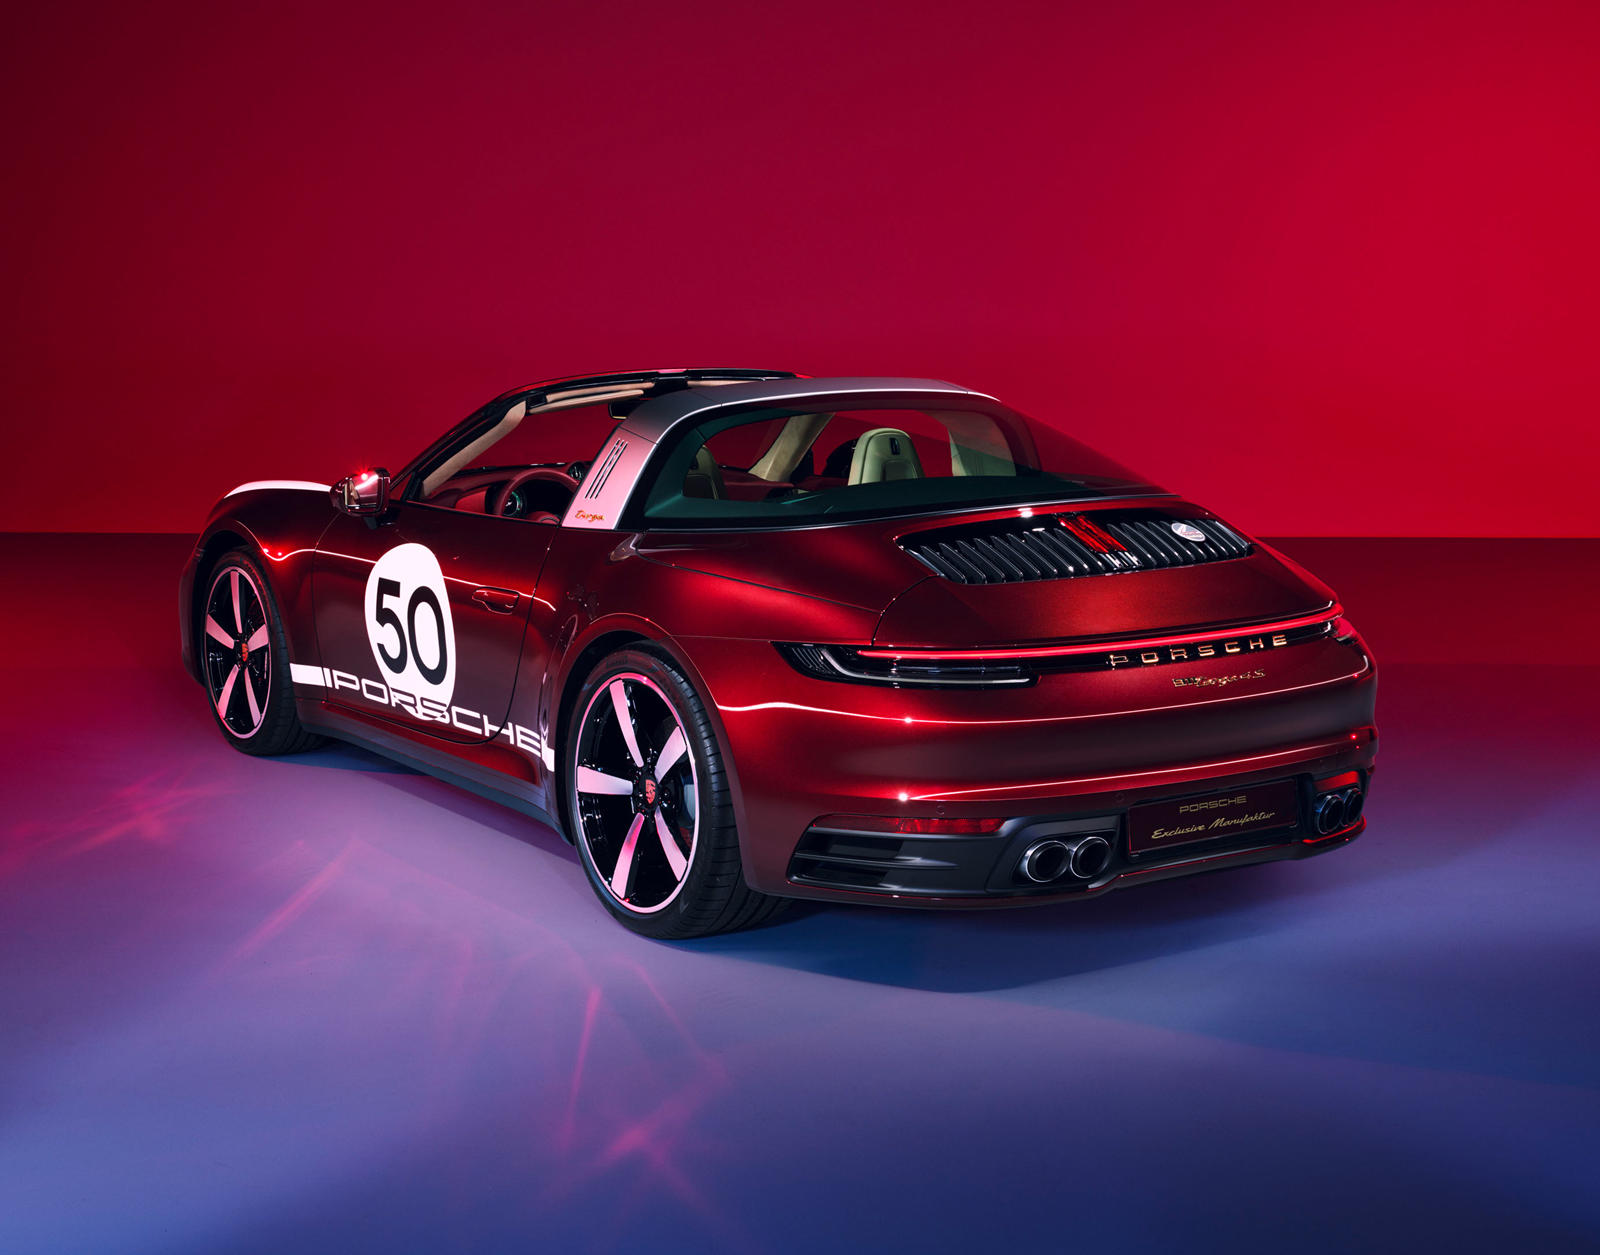 Наконец, у покупателей также есть возможность приобрести специальные часы Porsche Design с хронографом, цветовая гамма которых соответствует модели 911.